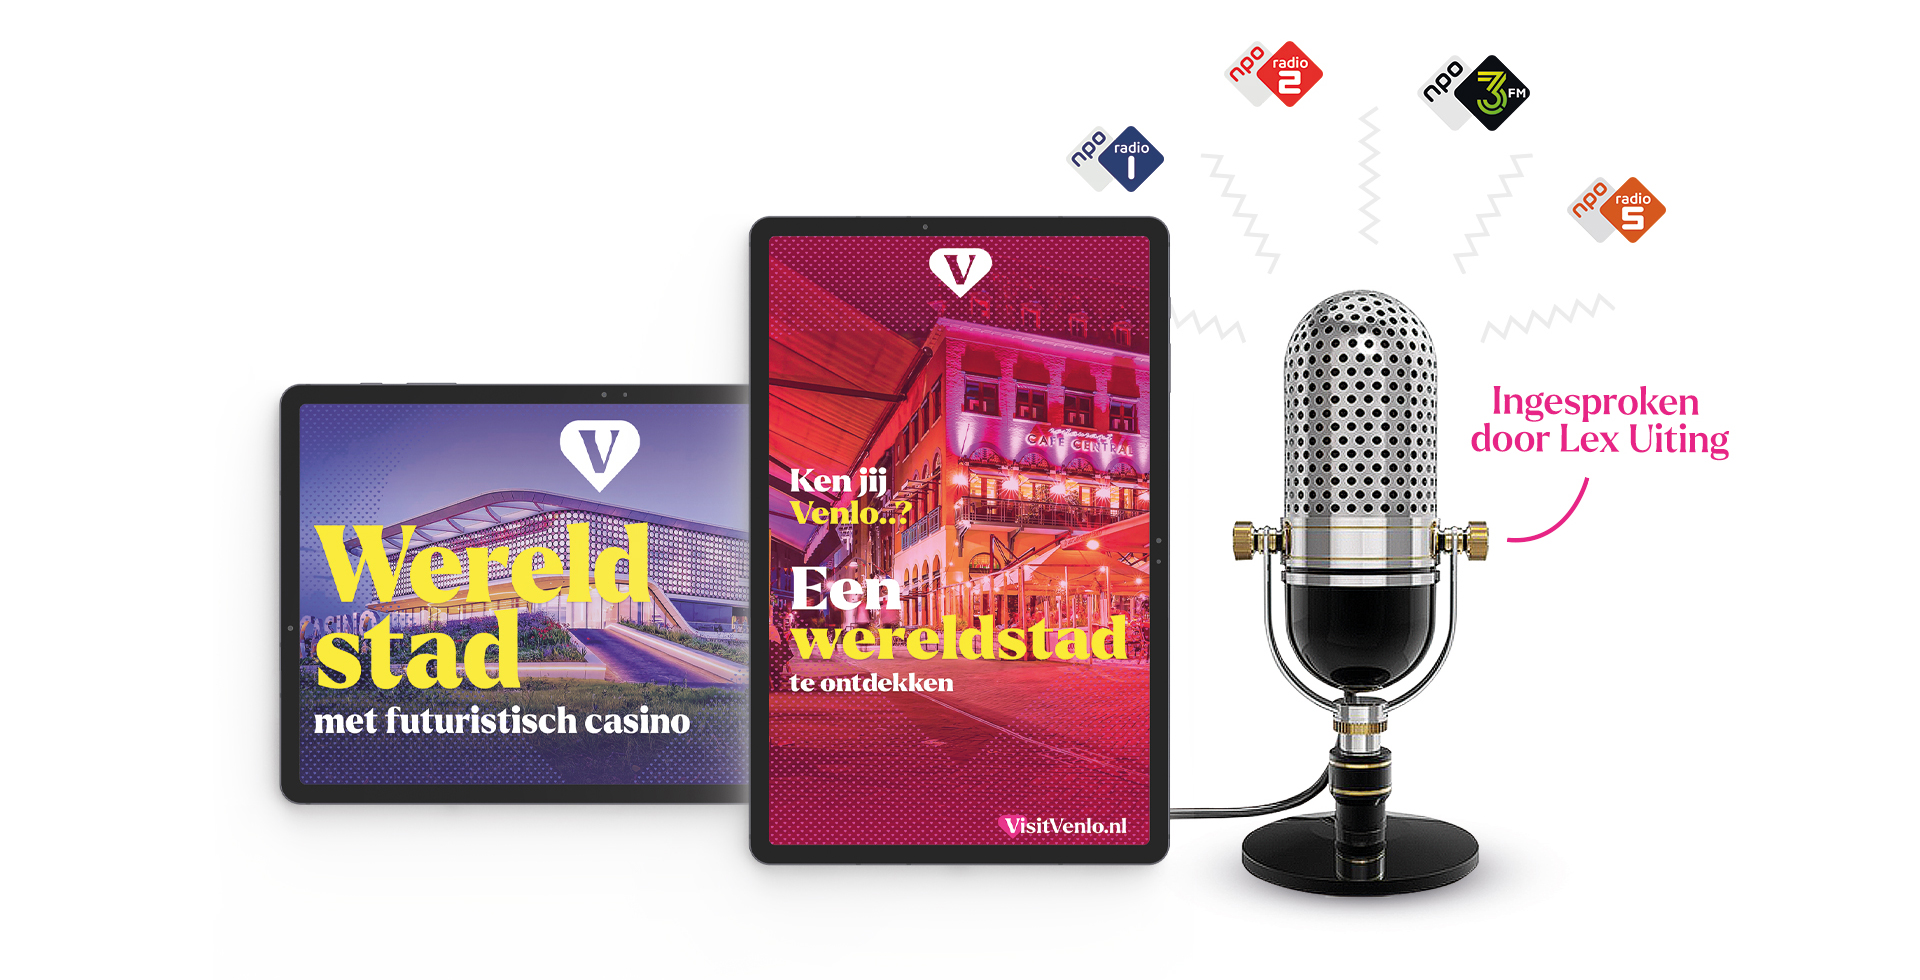 Spiegel crossmedia communicatie - Venlo Wereldstad - Radio